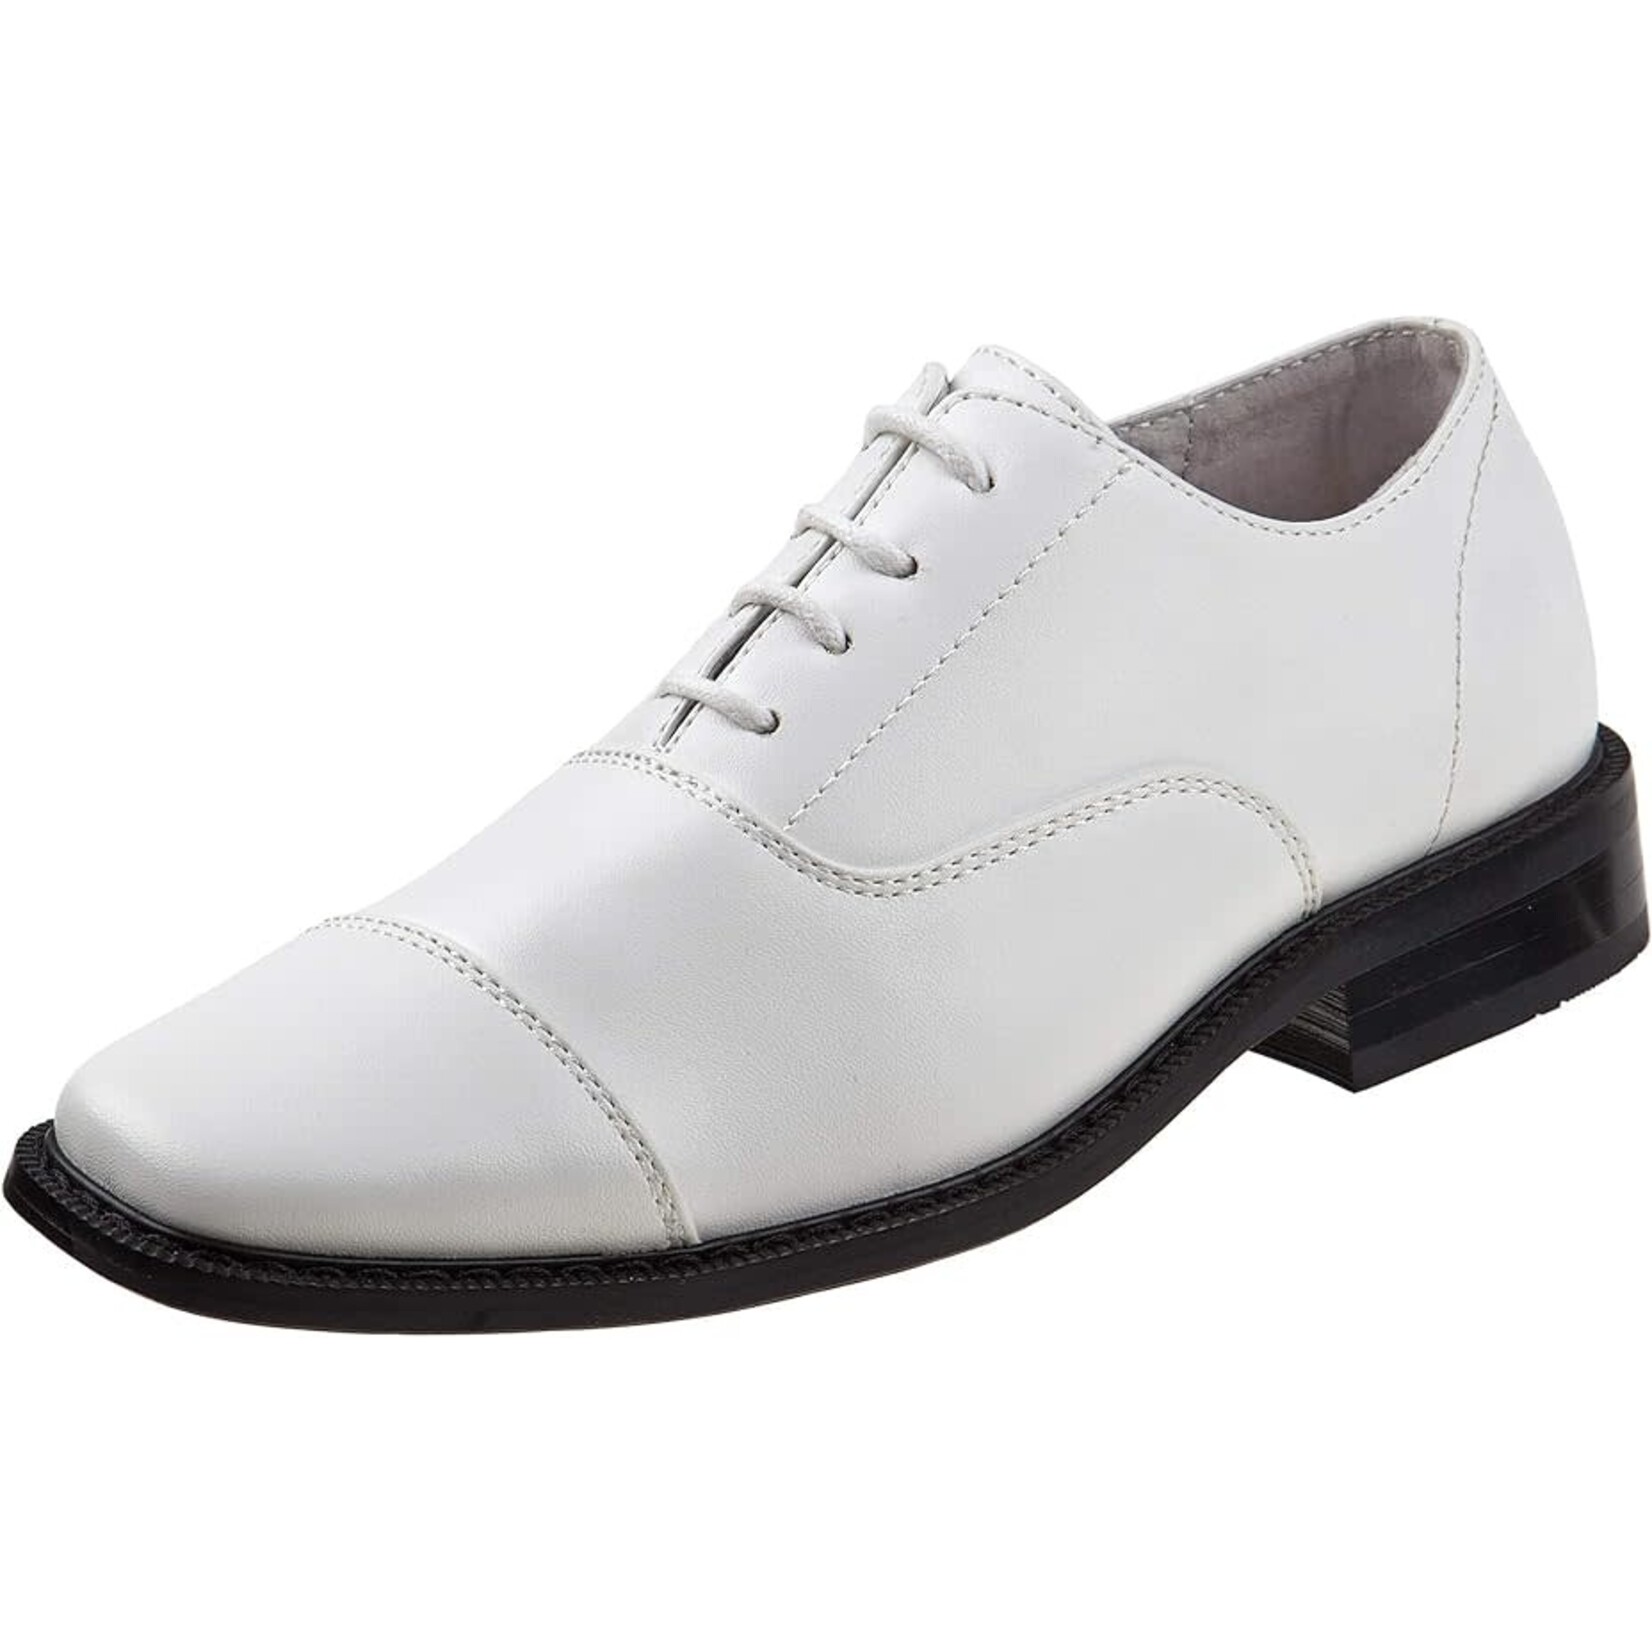 JOSEPH ALLEN Joseph Allen  Boys Dress Shoes Classic Style Shoes- JA38129